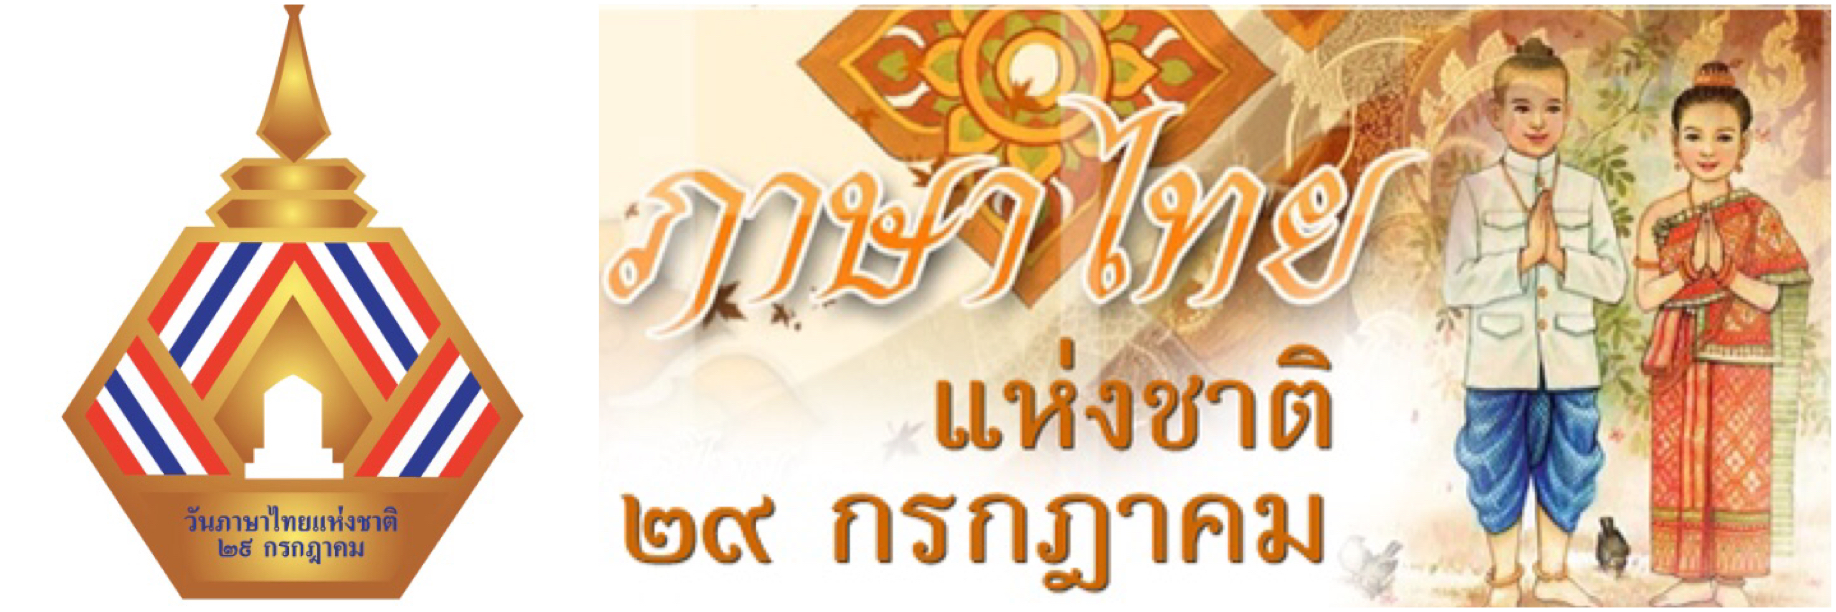 Journée Nationale de la Langue Thaï.jpeg